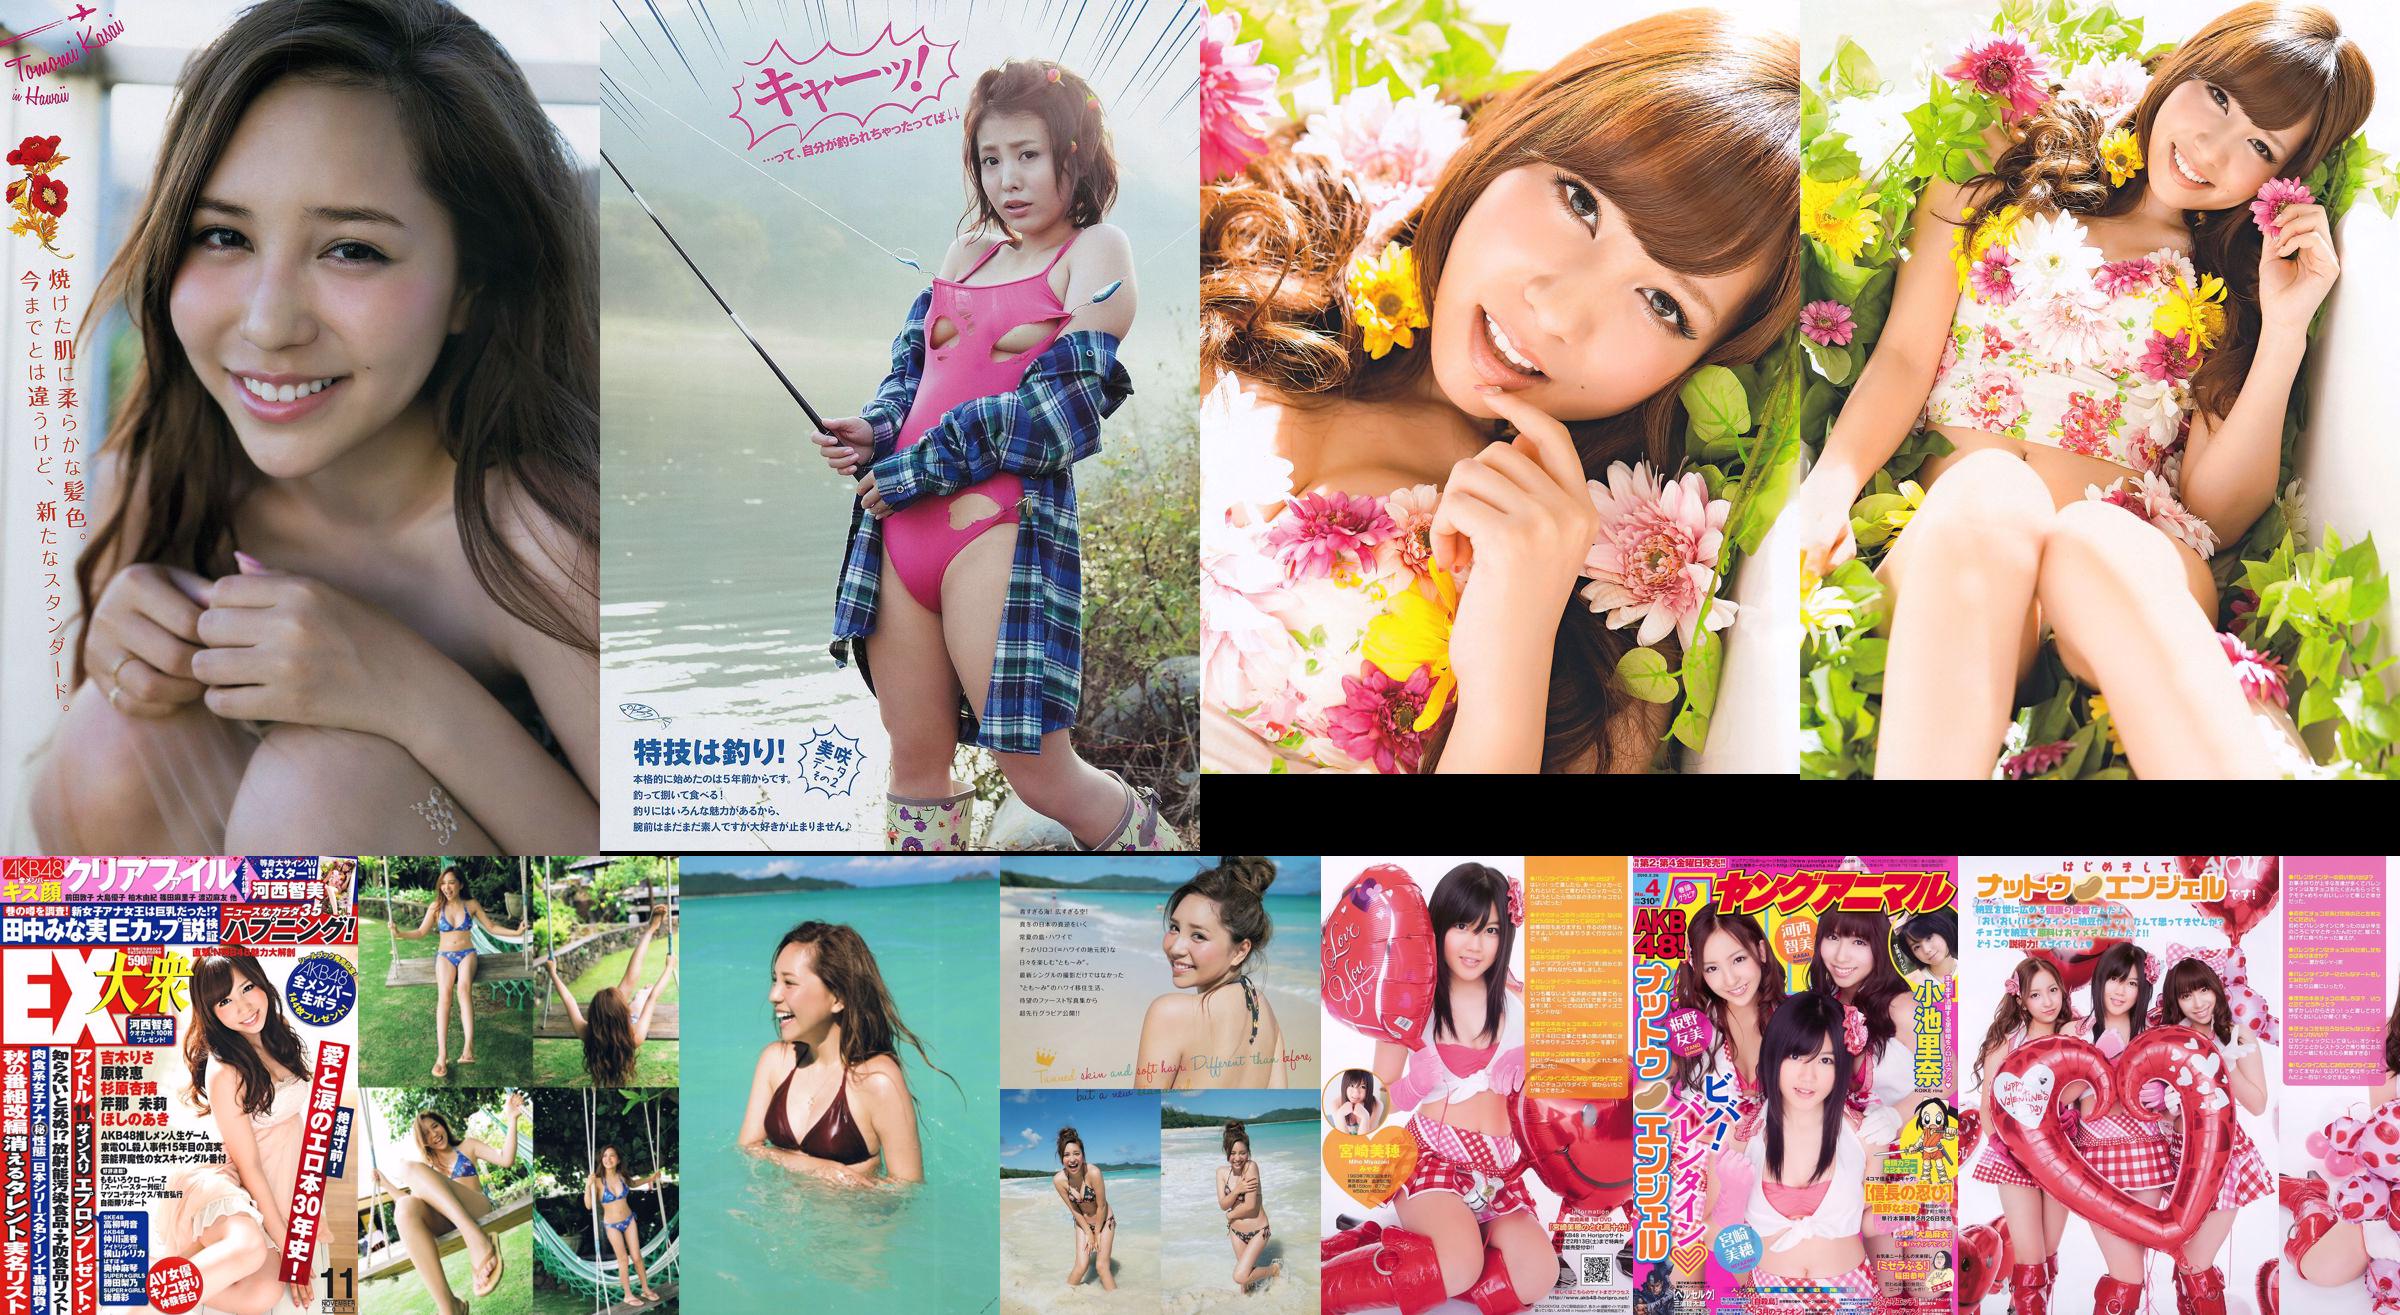 [Revista Young] Tomomi Kasai Misaki Yumoto 2014 Fotografia No.08 No.b5ccf5 Página 1